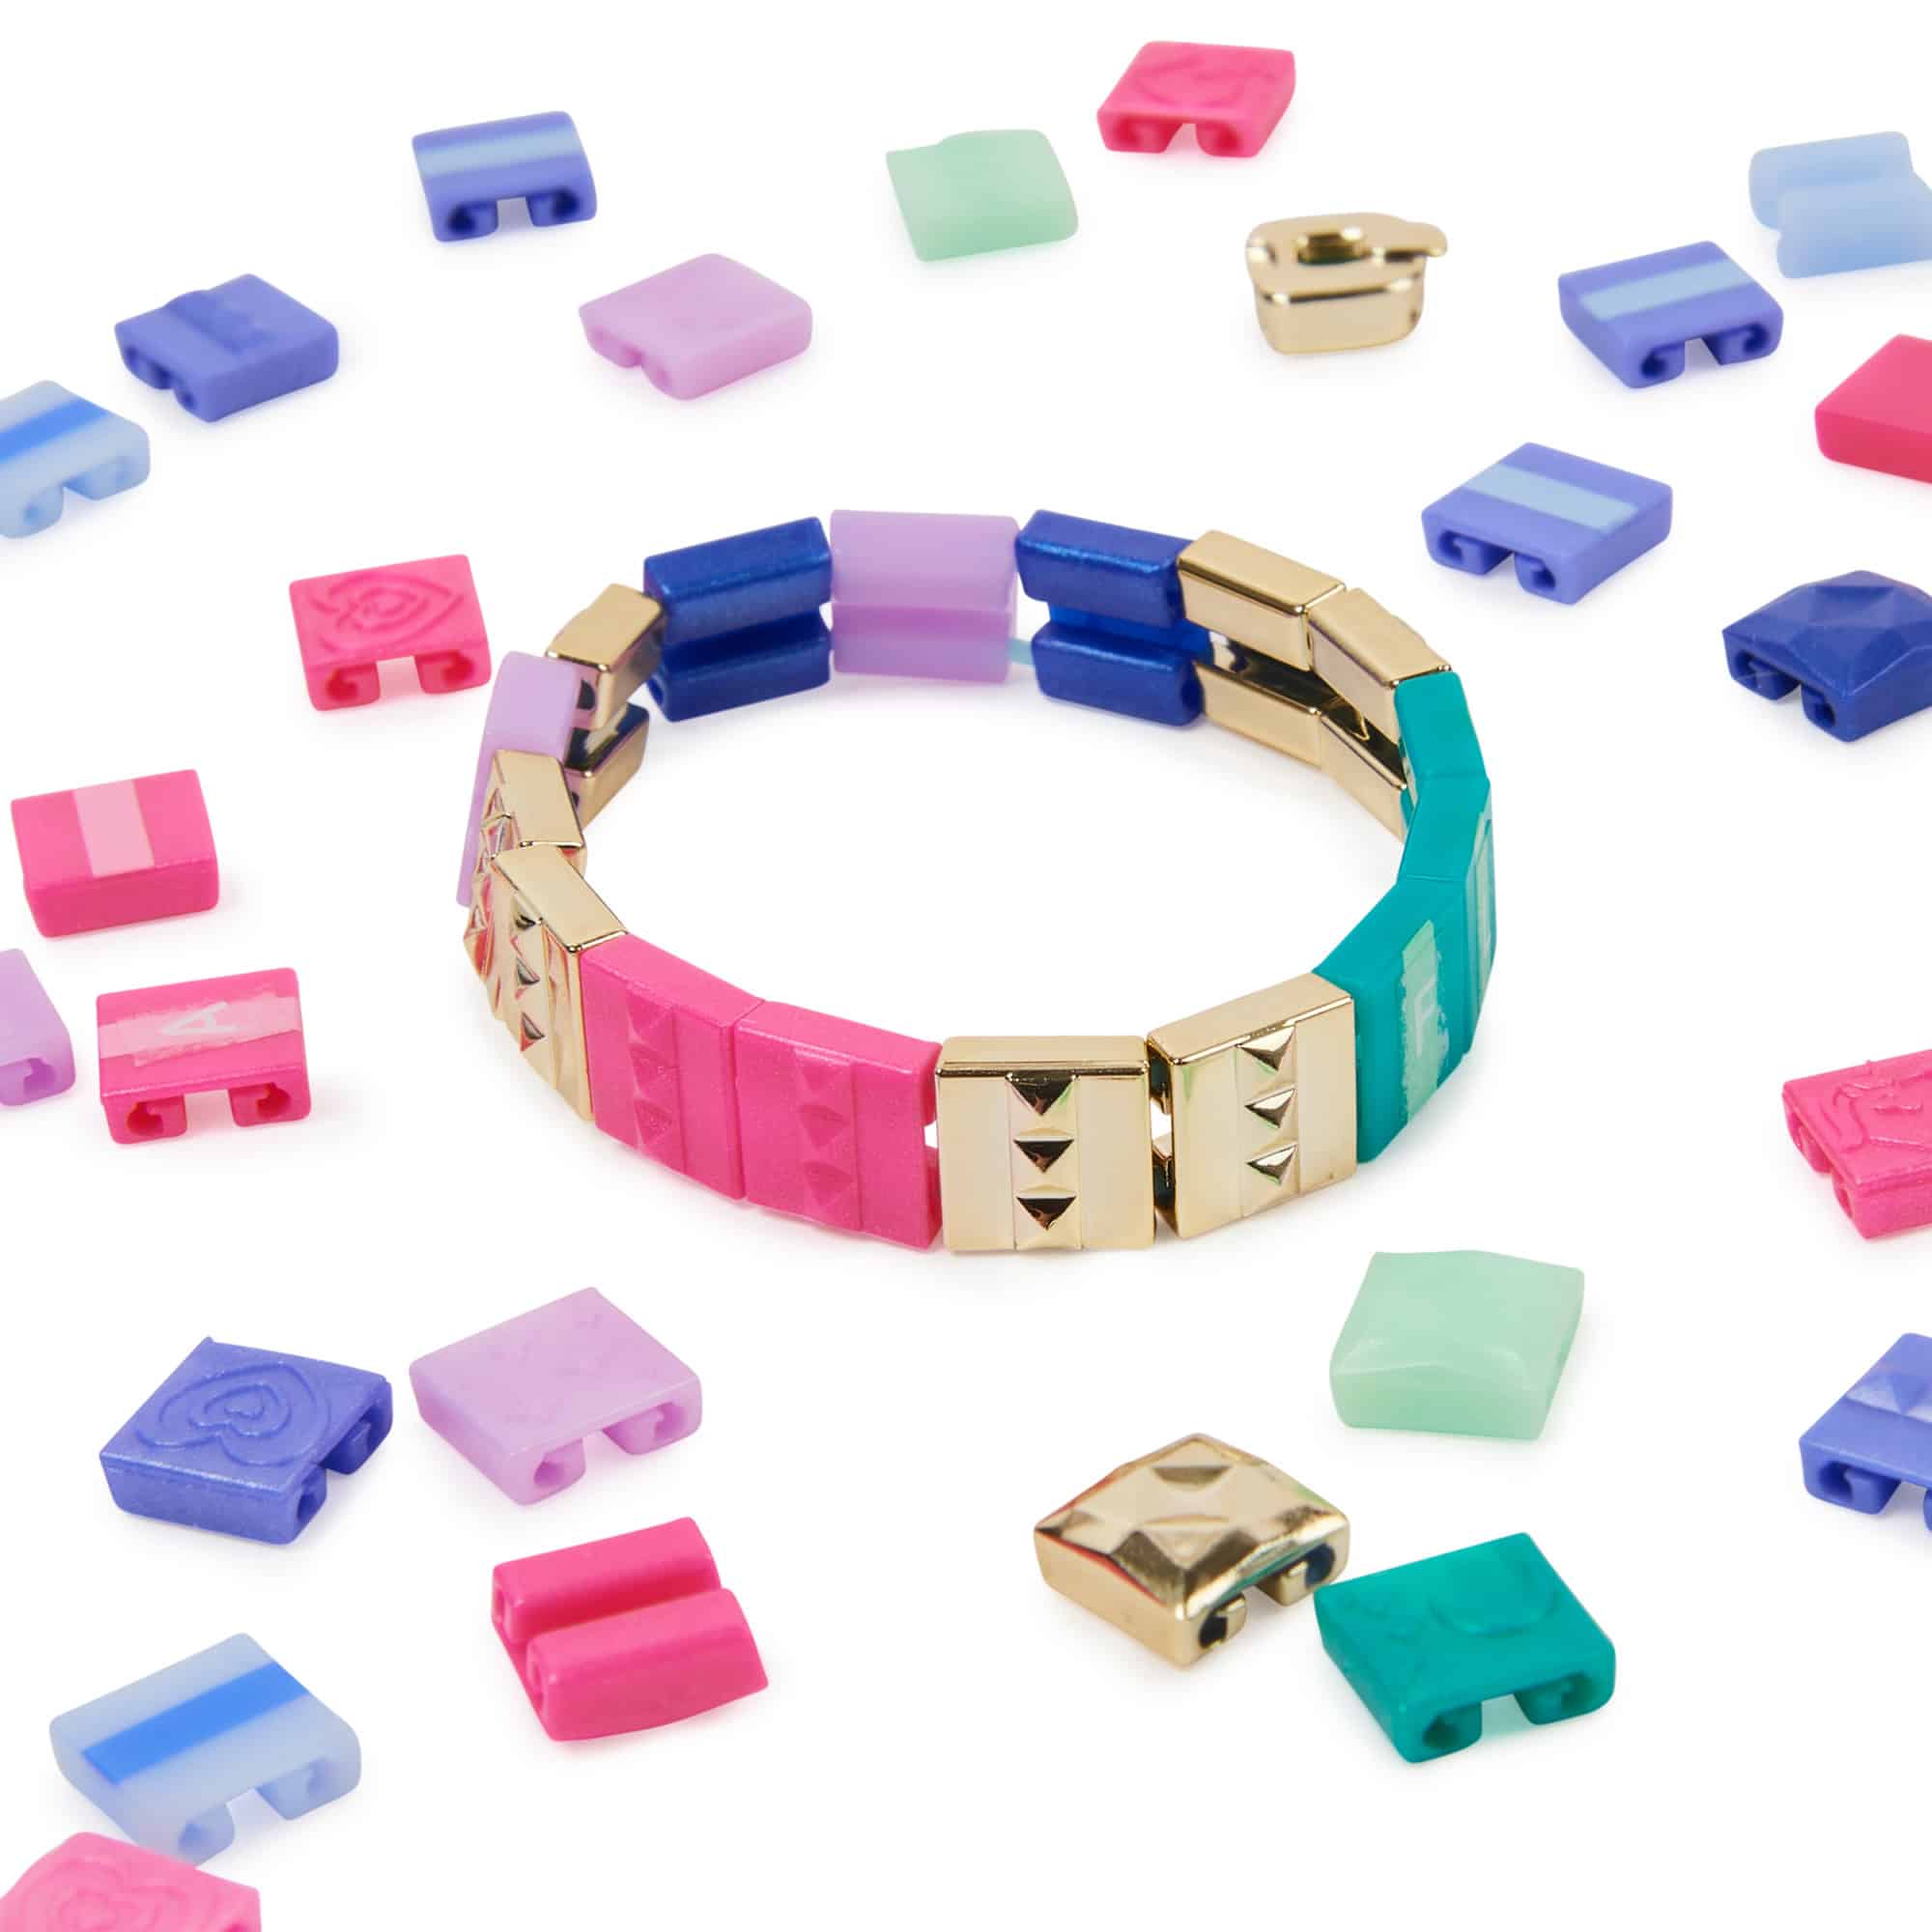 Soldes Spin Master Cool Maker Popstyle Bracelet Maker 2024 au